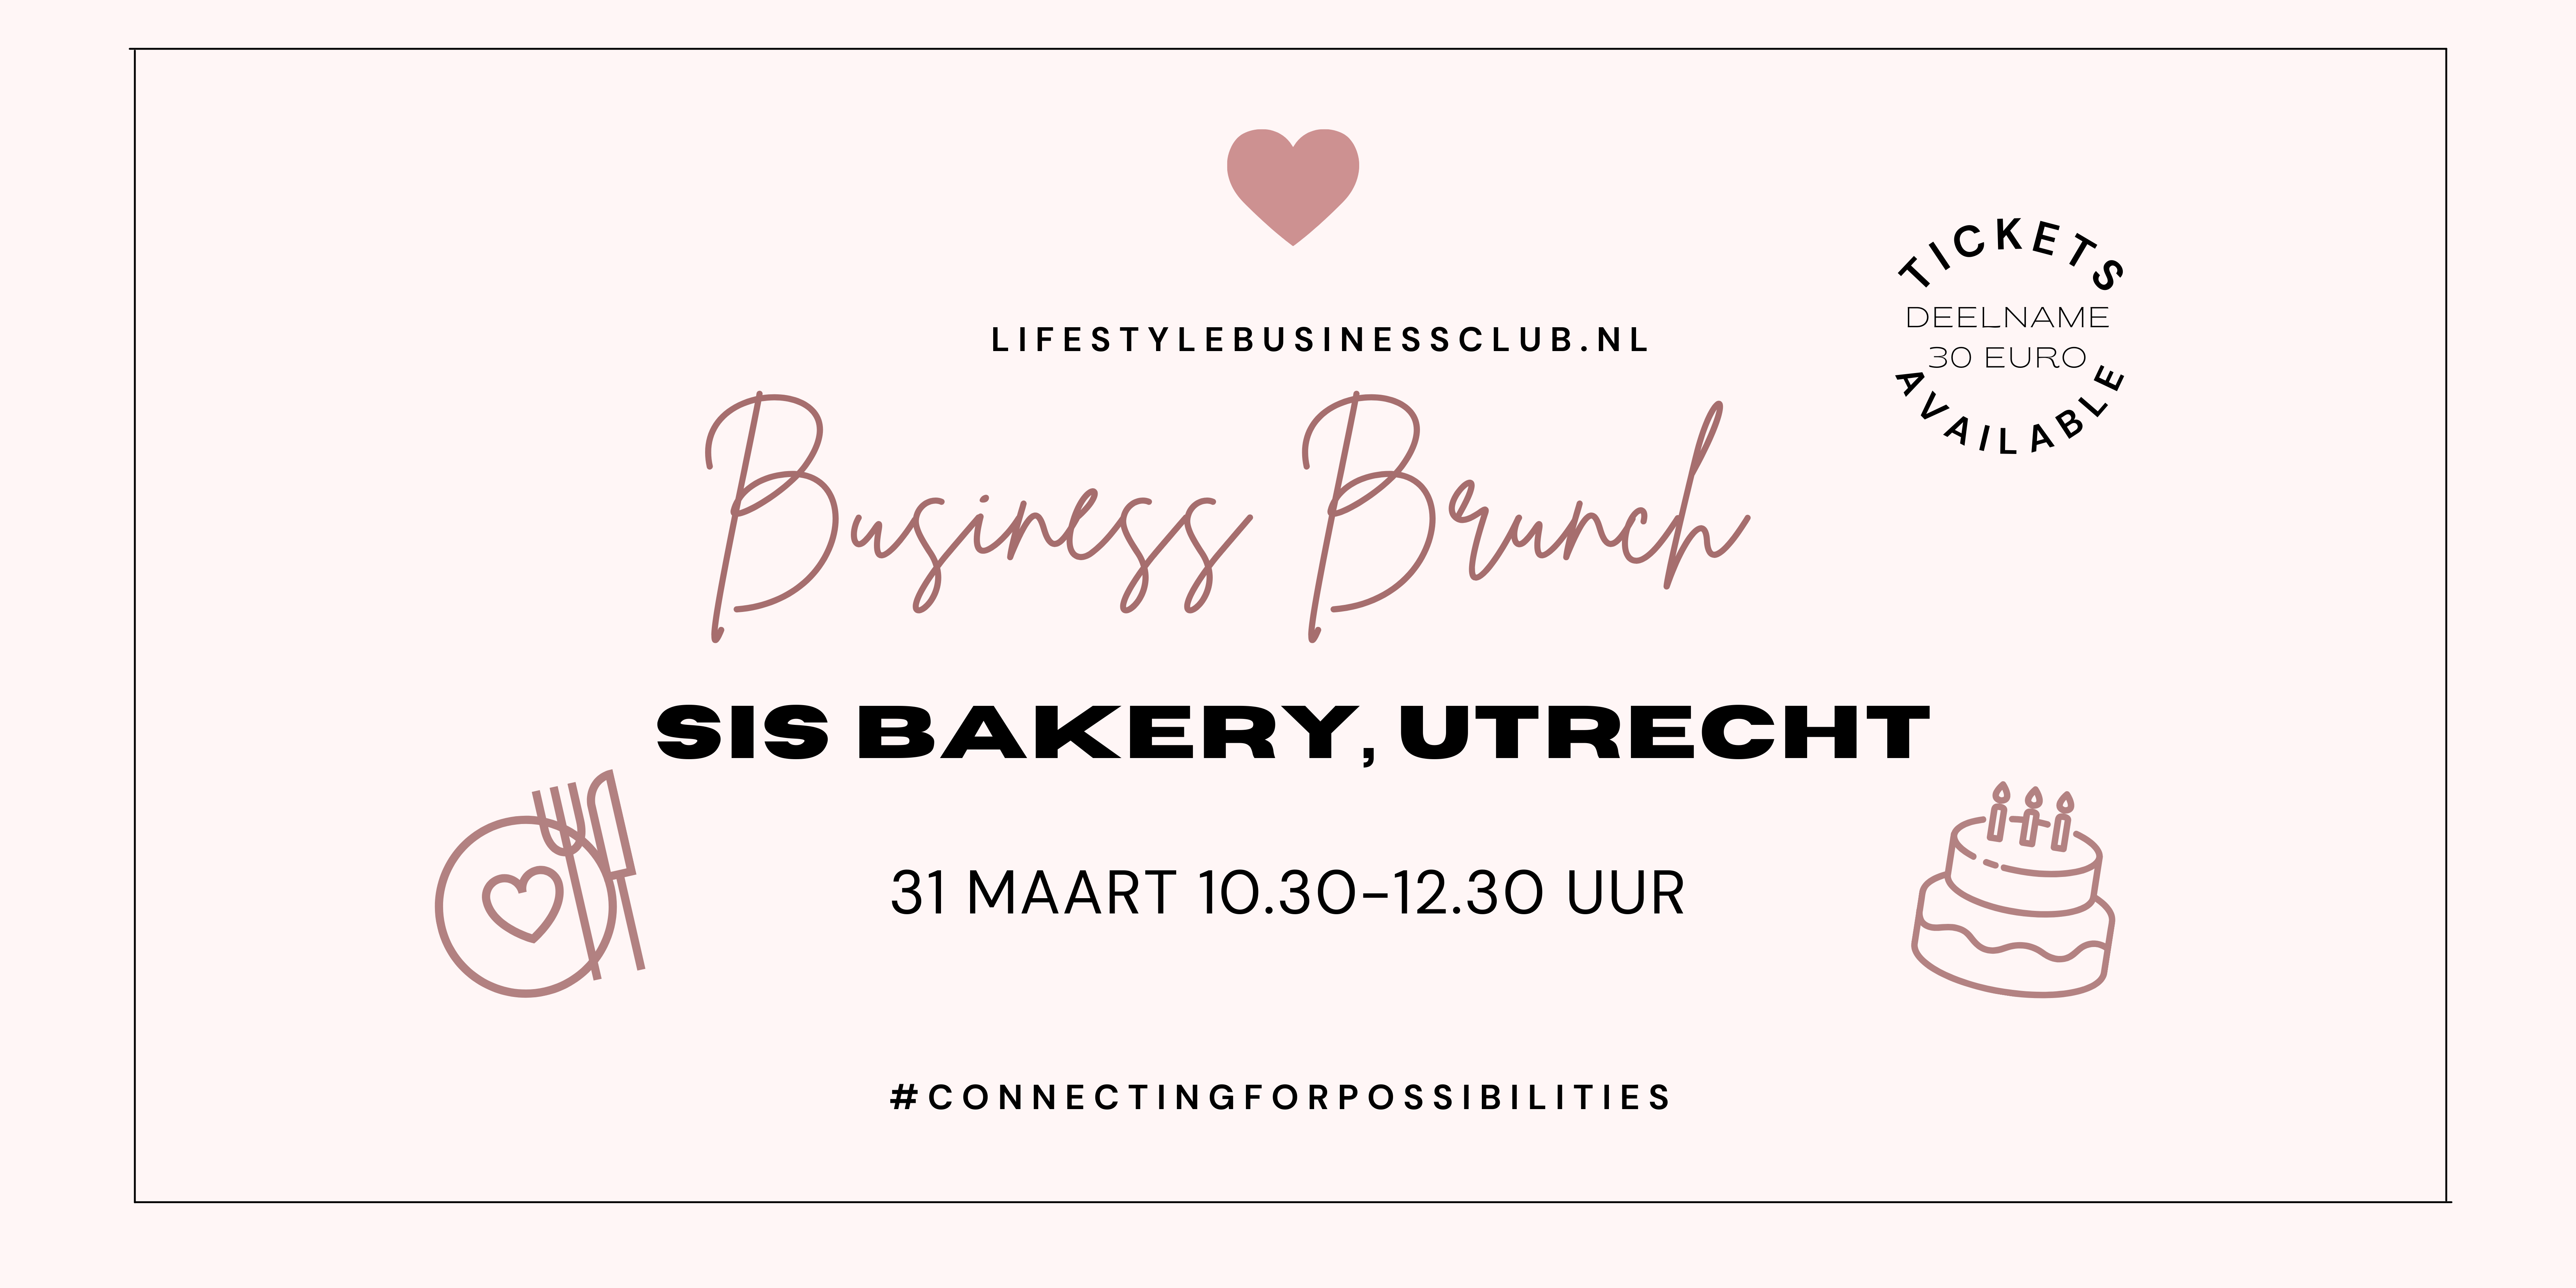 Lifestyle Business Brunch Utrecht